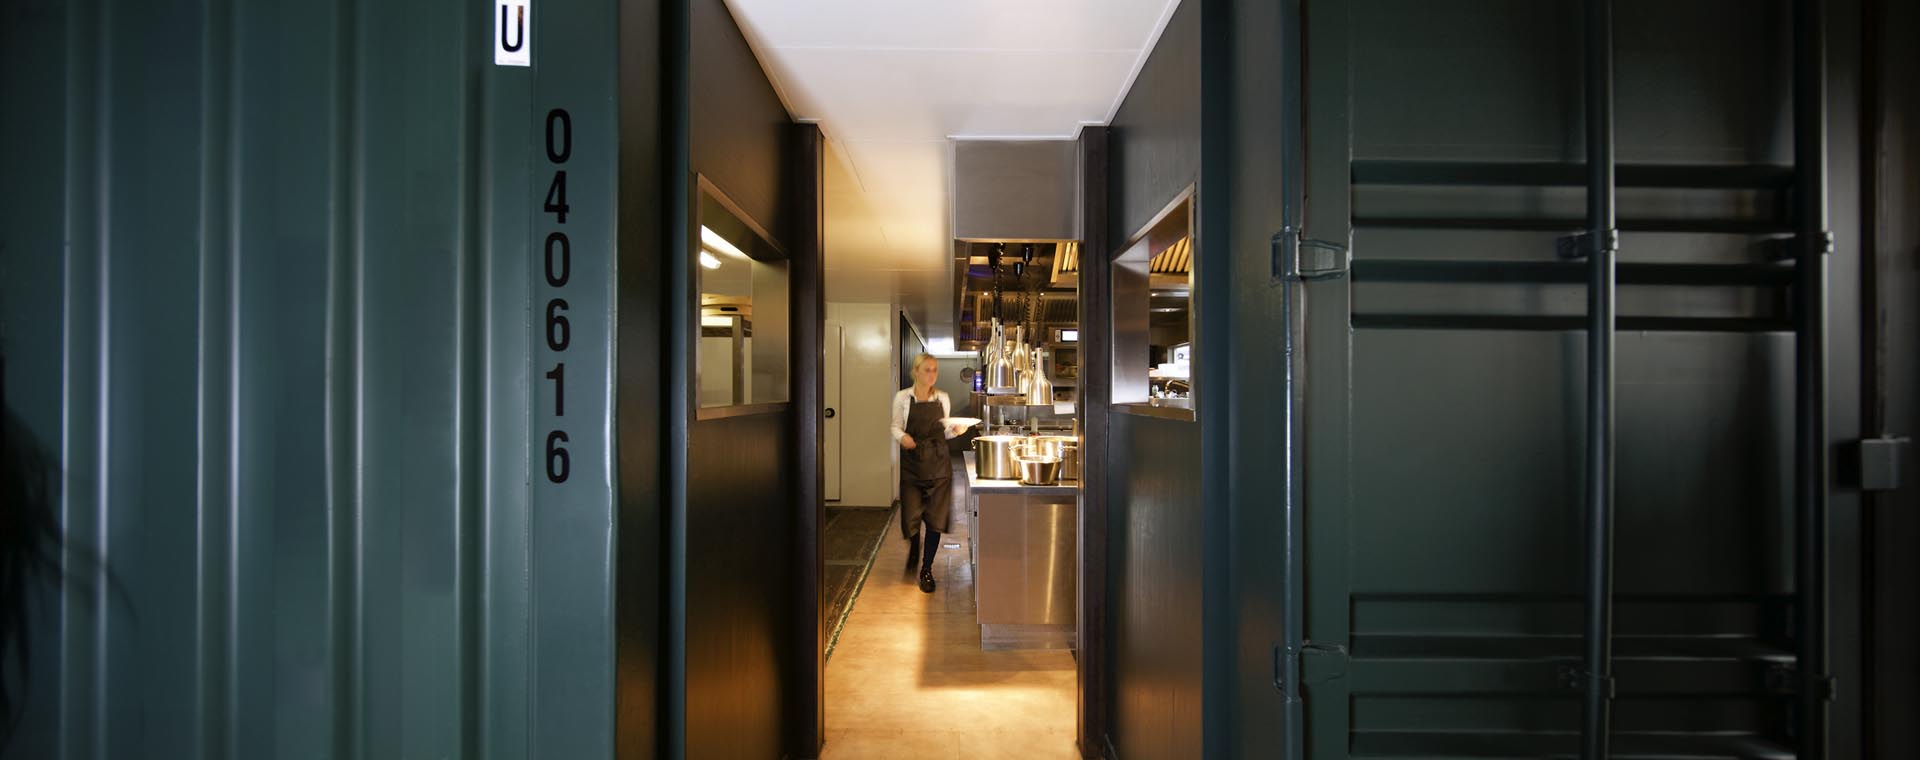 7 zicht op keuken van restaurant De Kaserne in Den Bosch deze is gemaakt in twee zeecontainers